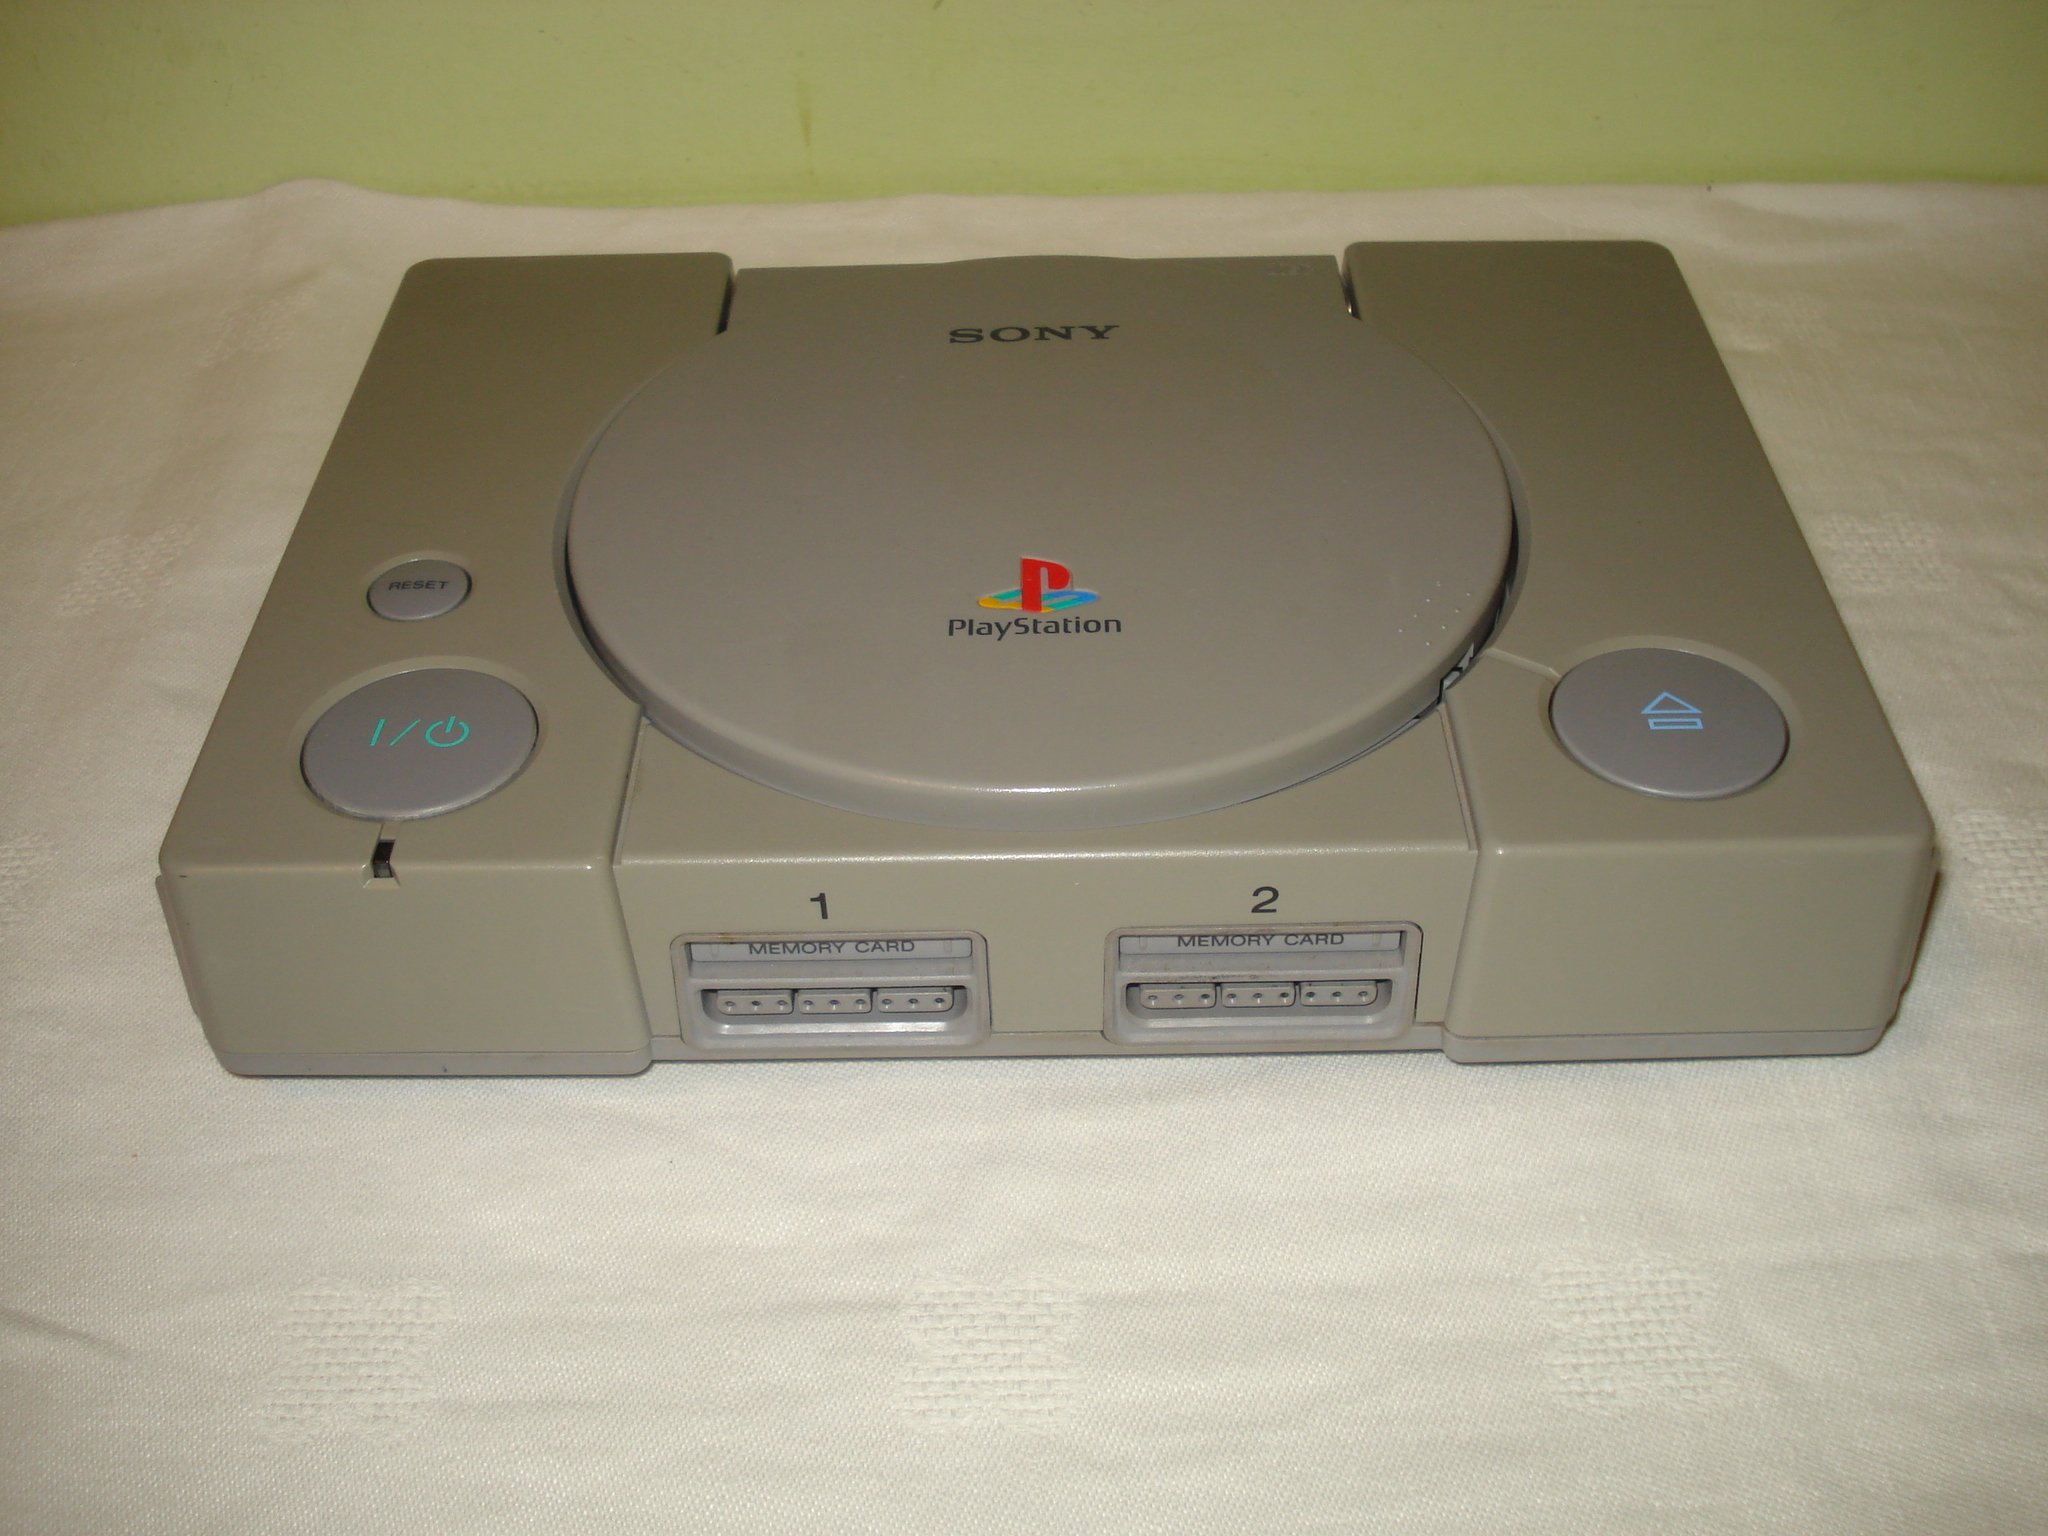 Konsola SONY PlayStation PSX przerobiona SCPH-552